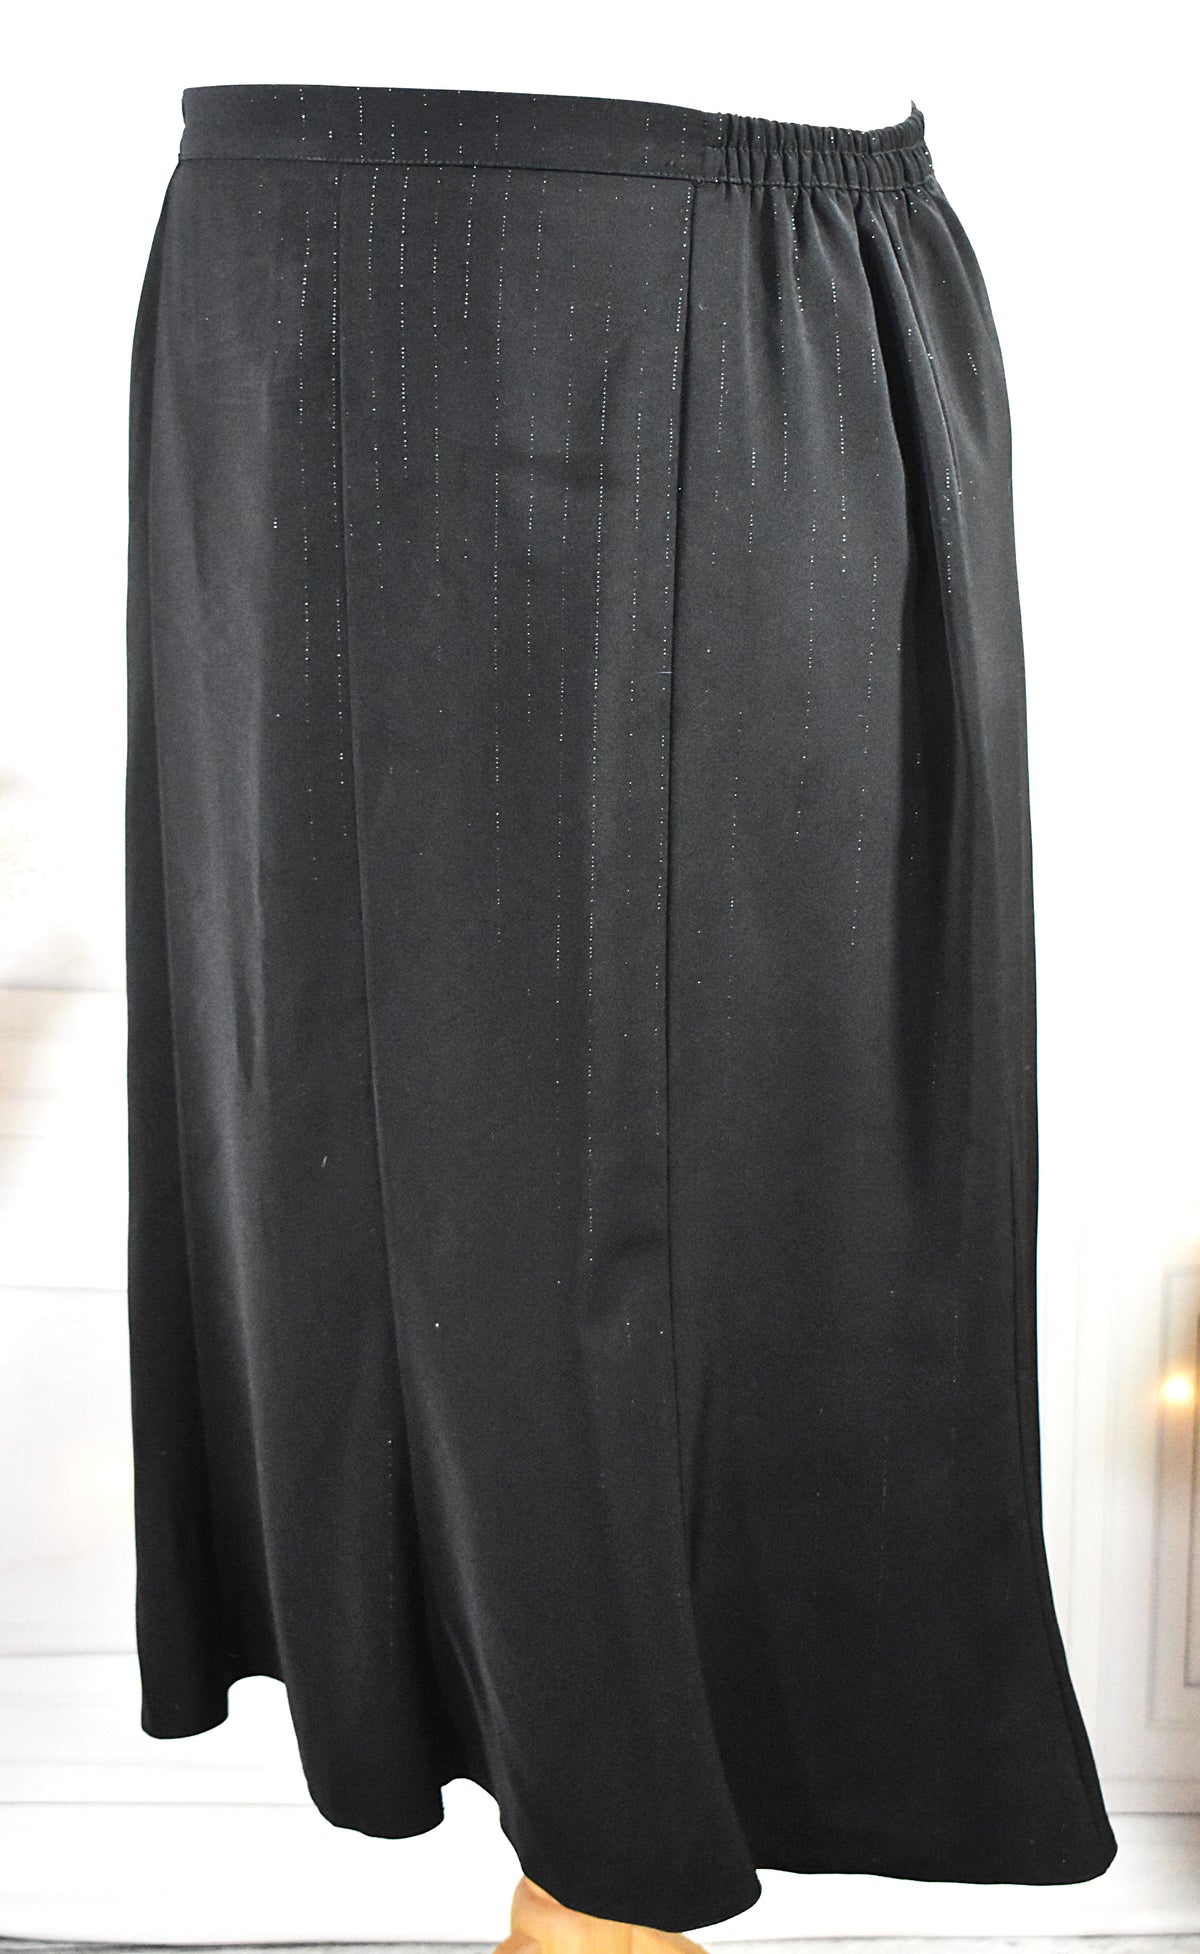 Jupe noire mi-longue aux rayures argentées